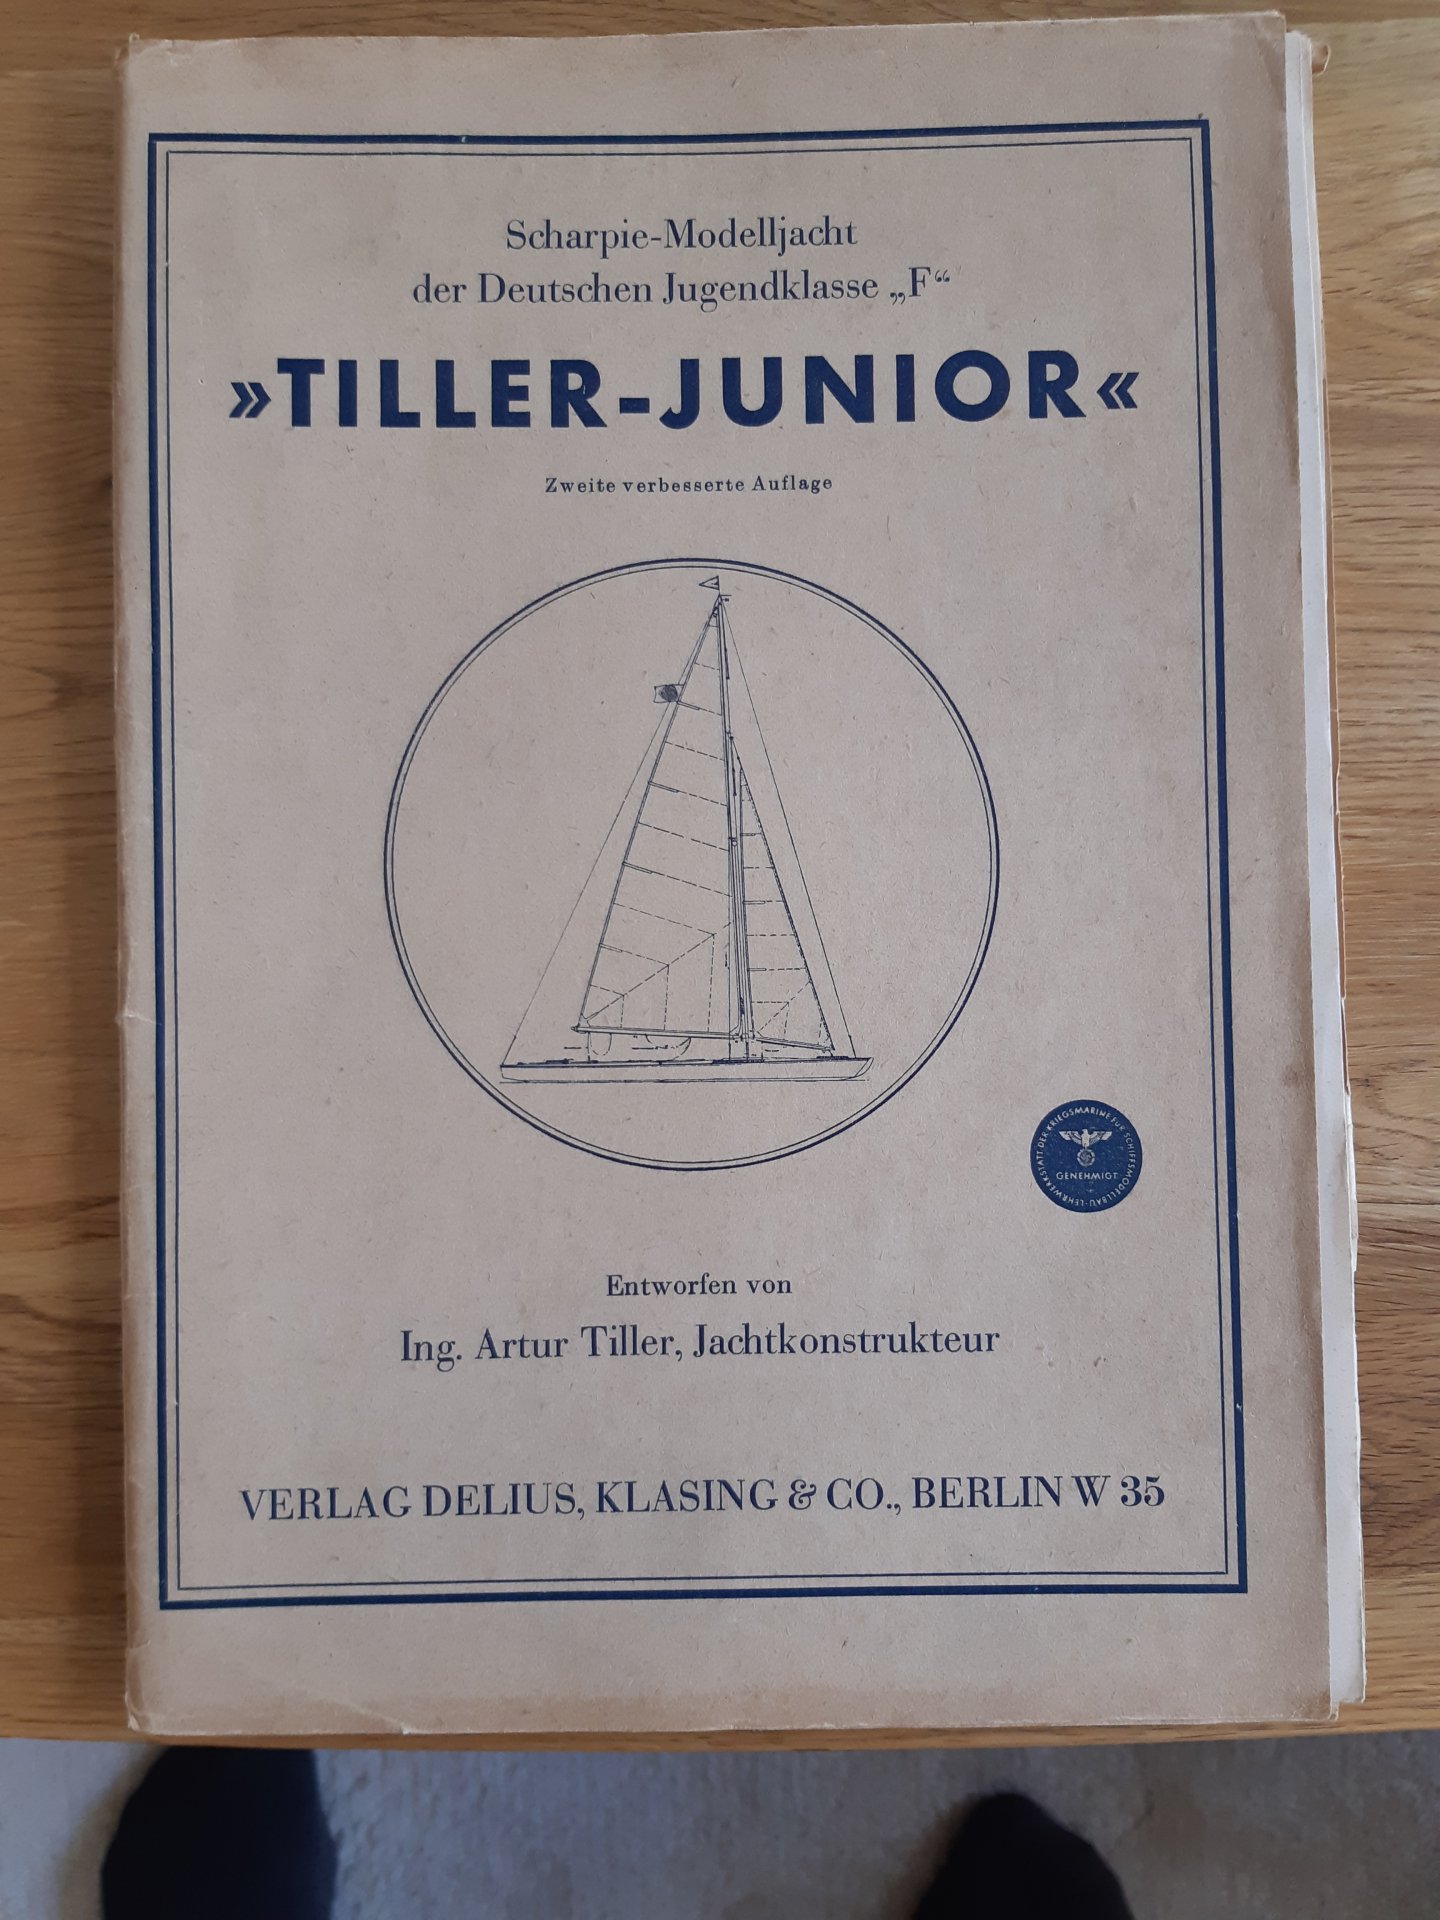 2 Tiller Junior   2. verb. Auflage   194220230419_105950.jpg